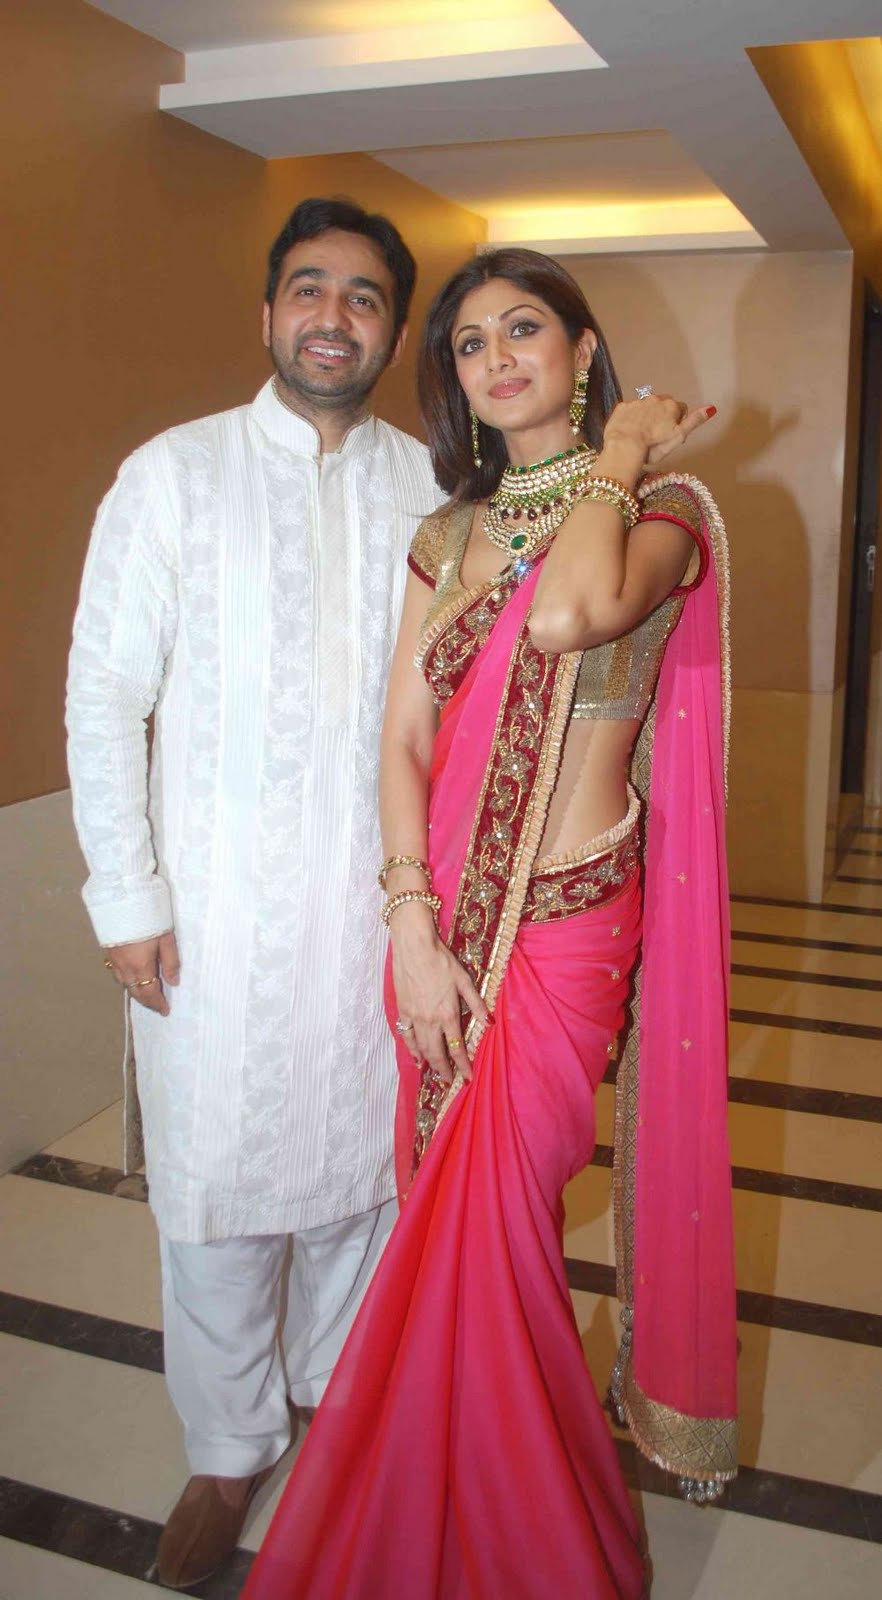 Shilpa-Shetty and Raj Kundra |Photo courtesy : bolly holly actress